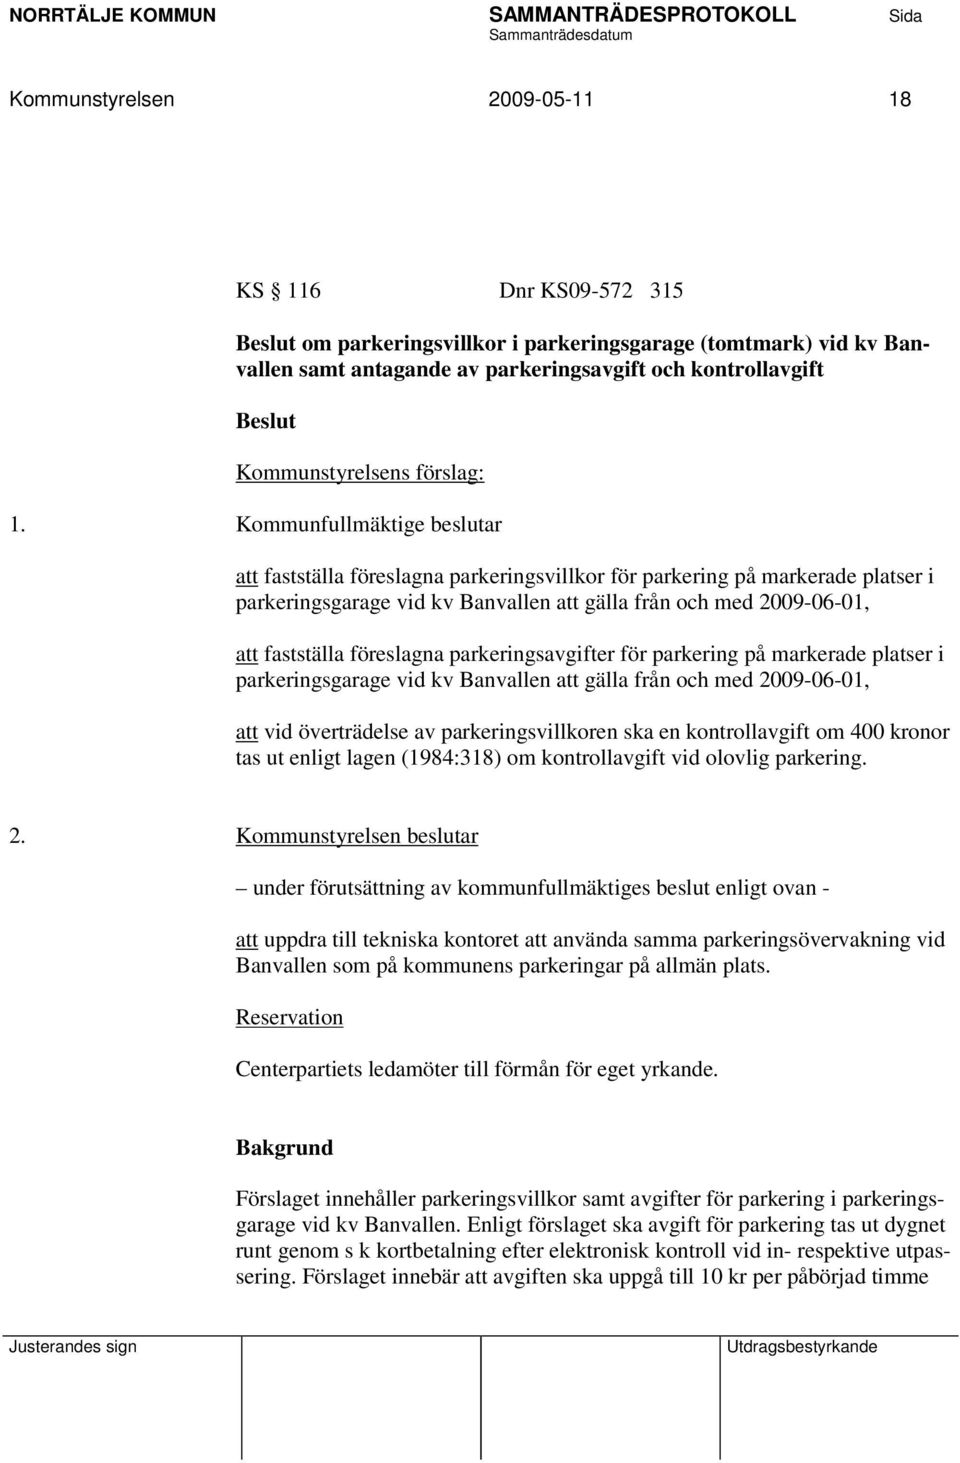 Kommunfullmäktige beslutar att fastställa föreslagna parkeringsvillkor för parkering på markerade platser i parkeringsgarage vid kv Banvallen att gälla från och med 2009-06-01, att fastställa